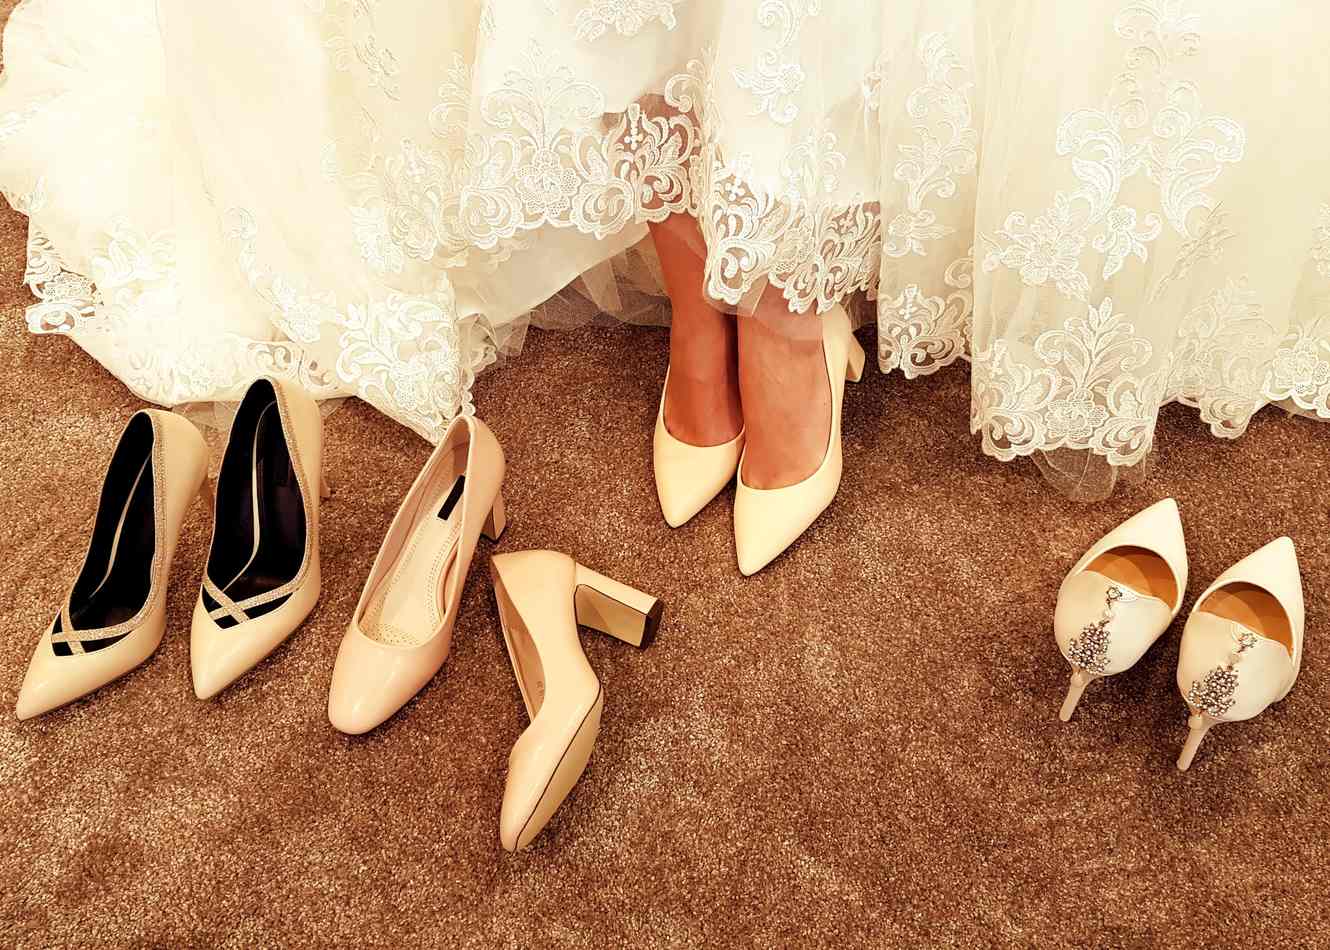 Свадебные ботильоны для невесты: как выбрать, на что обратить внимание, какие покупать на свадьбу летом, осенью и зимой, фото моделей